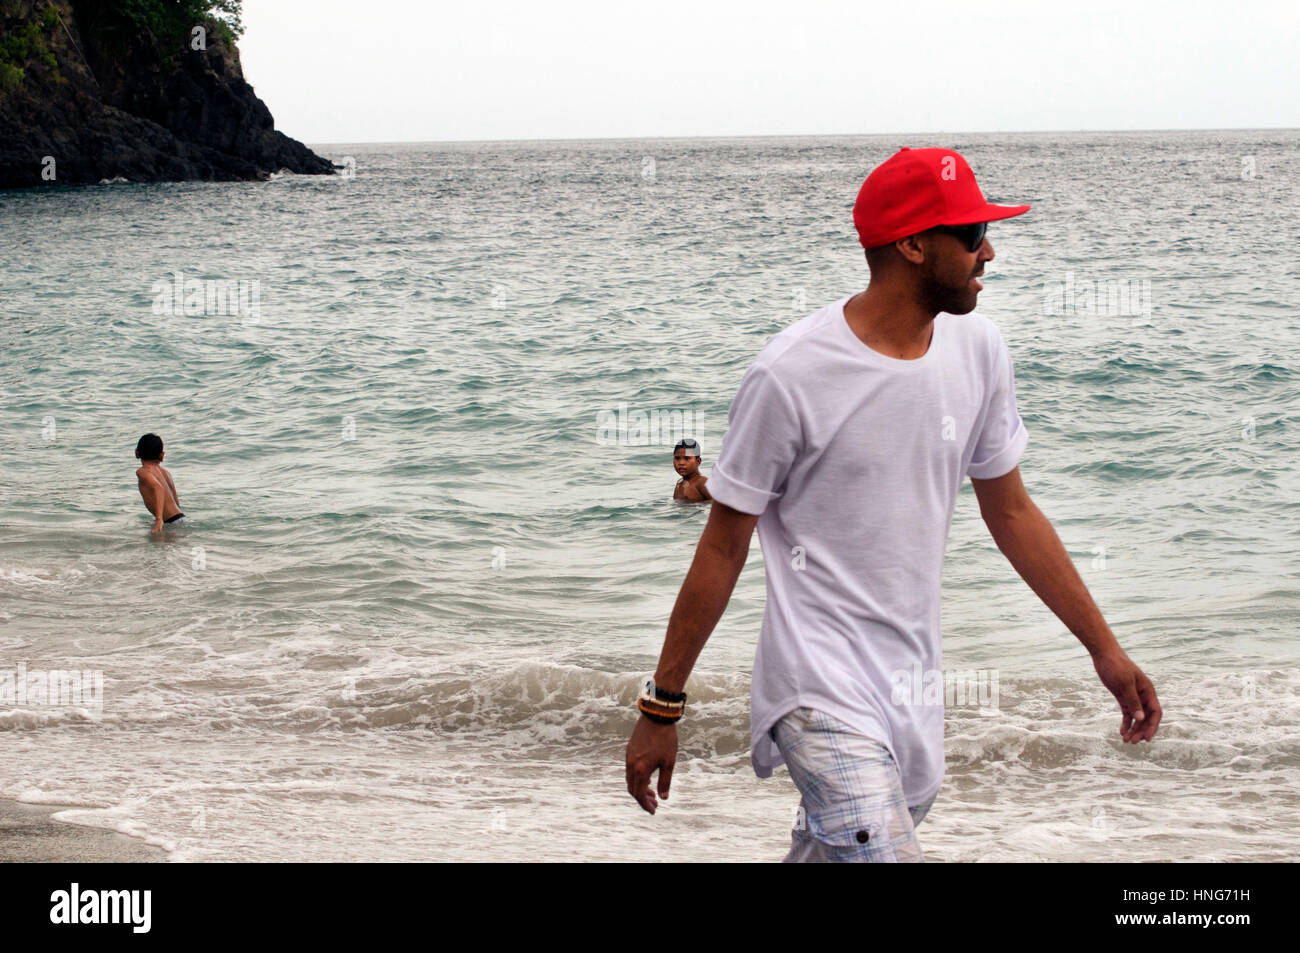 Cool Dude paseos a lo largo de Playa en Bali Indonesia vestidos de rojo Baseball Hat, camiseta blanca y pantalón corto Foto de stock